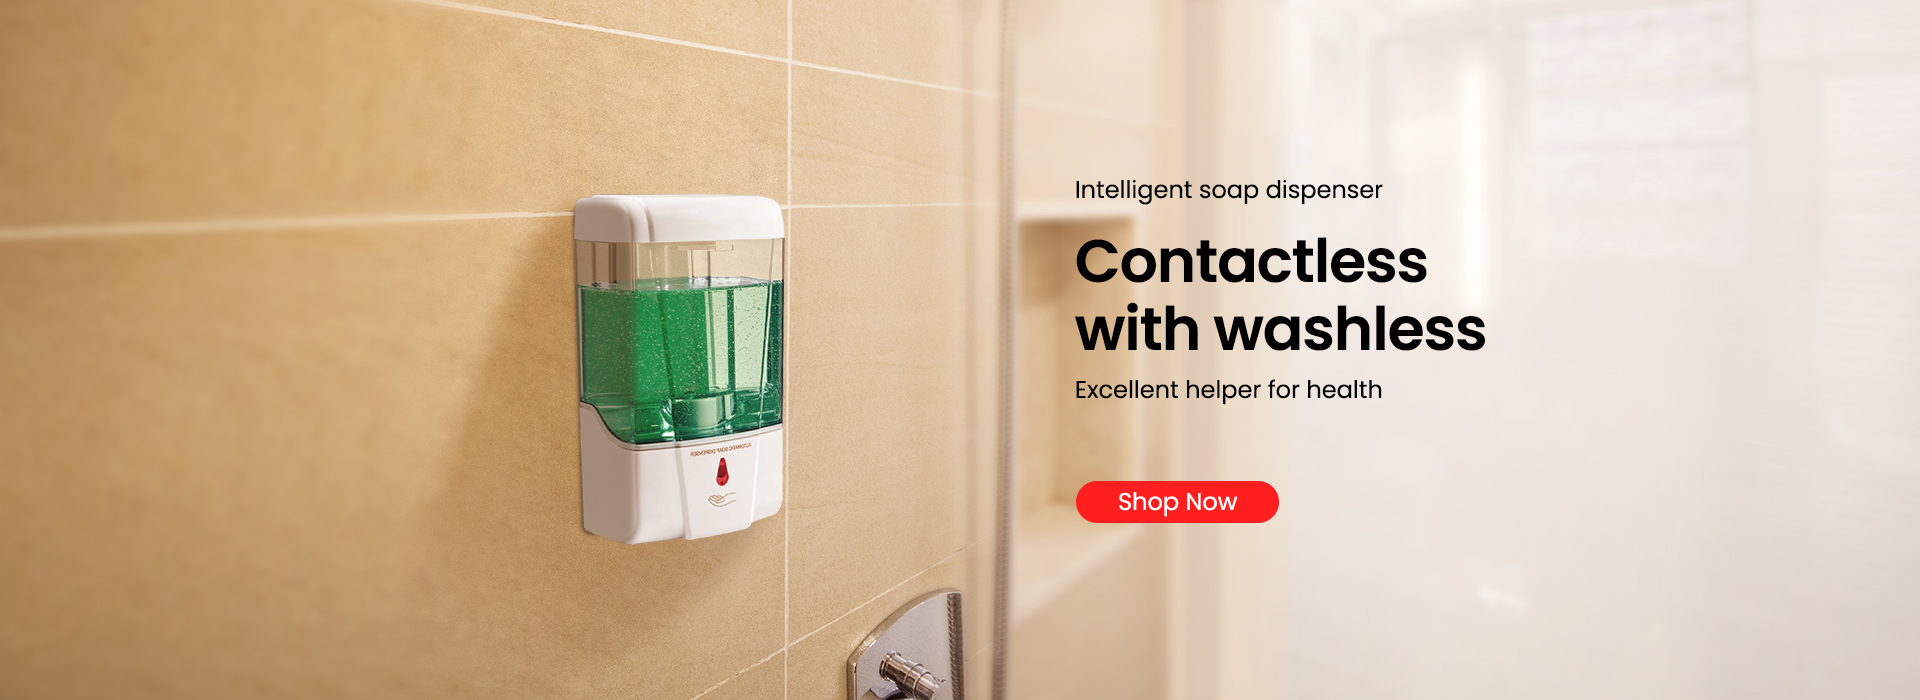 توزیع کننده صابون هوشمند